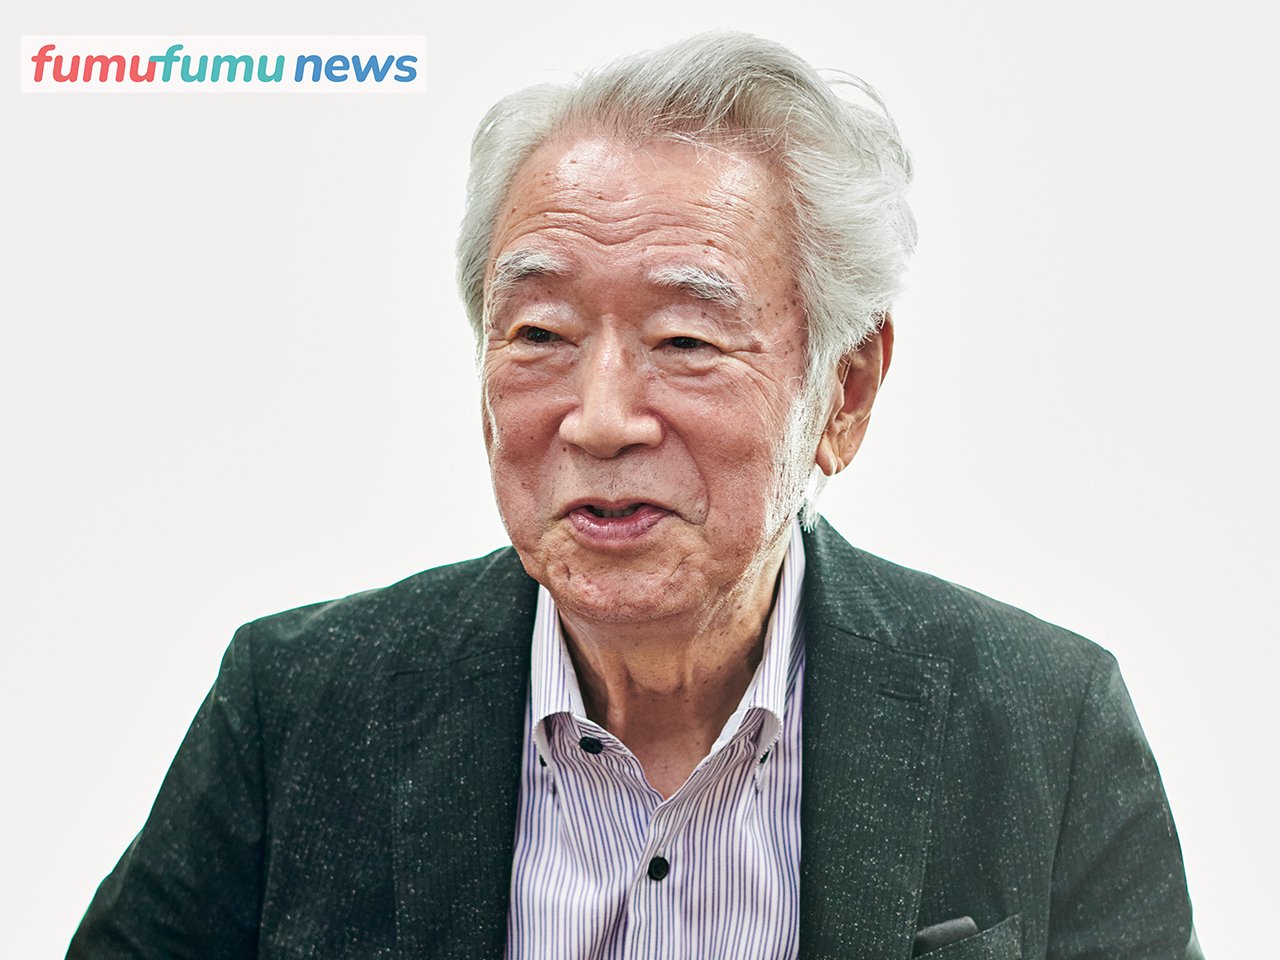 人生相談50年の加藤諦三先生 不幸をまき散らす人たちから自分を守る方法 Fumufumu News フムフムニュース